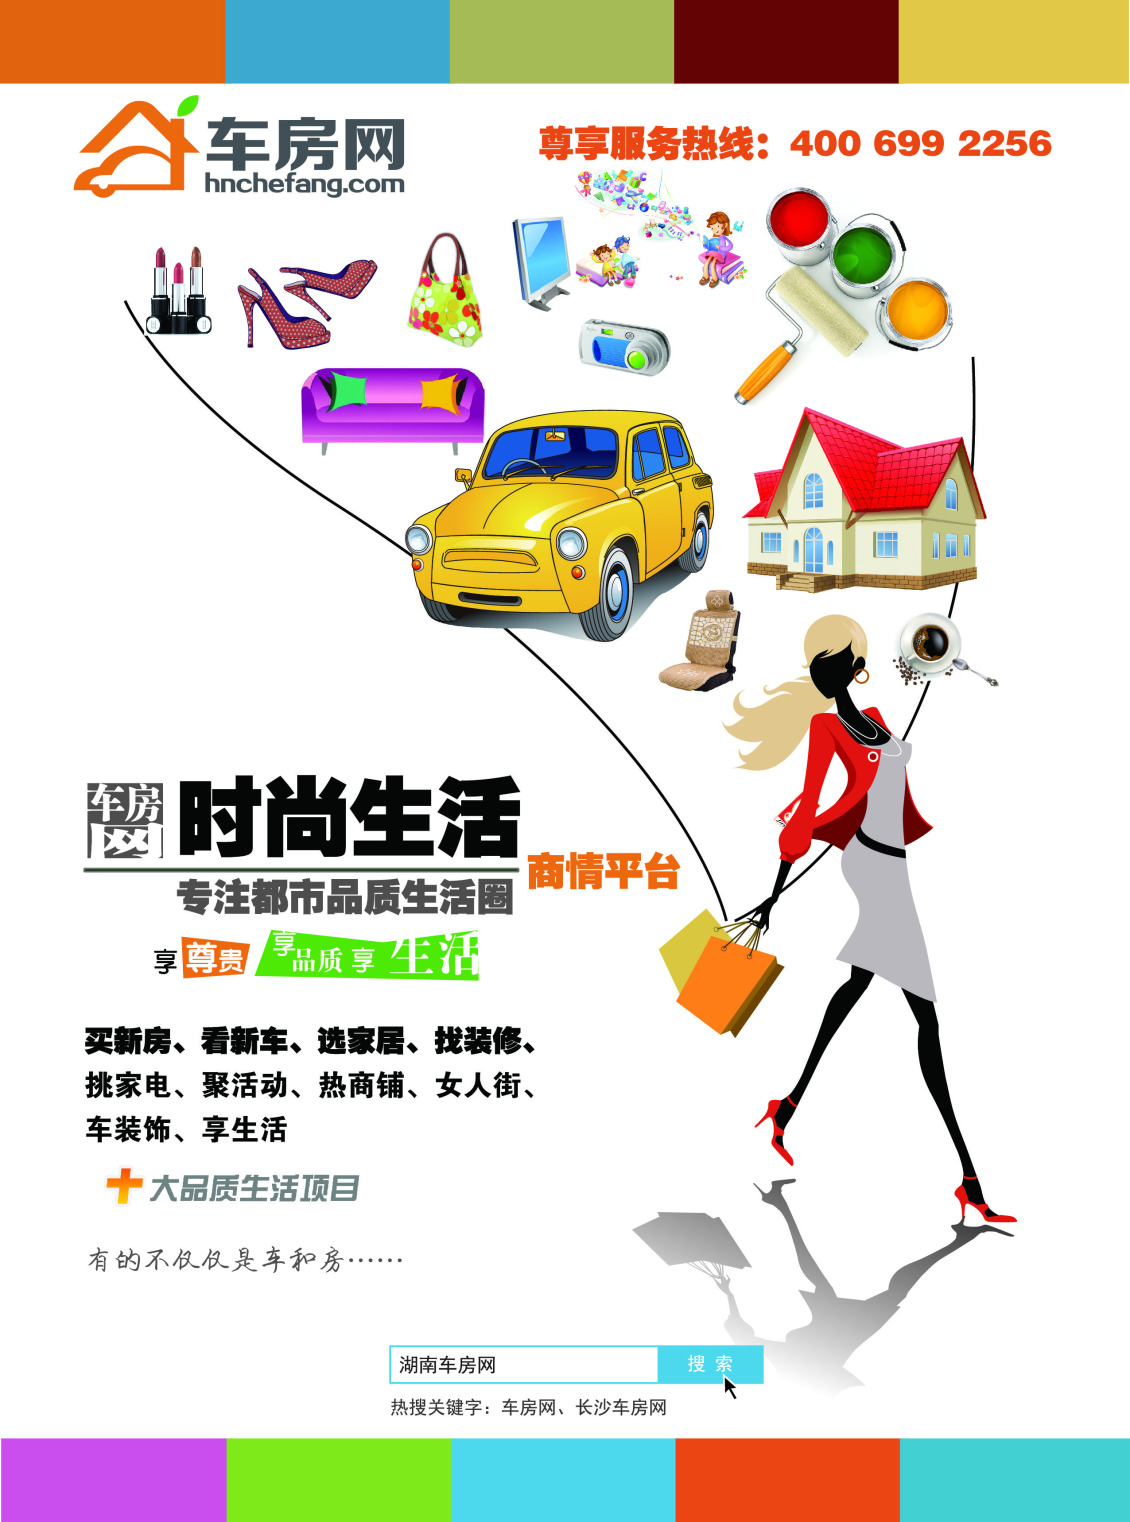 淘宝美工y109609网站宣传DM海报设计作品